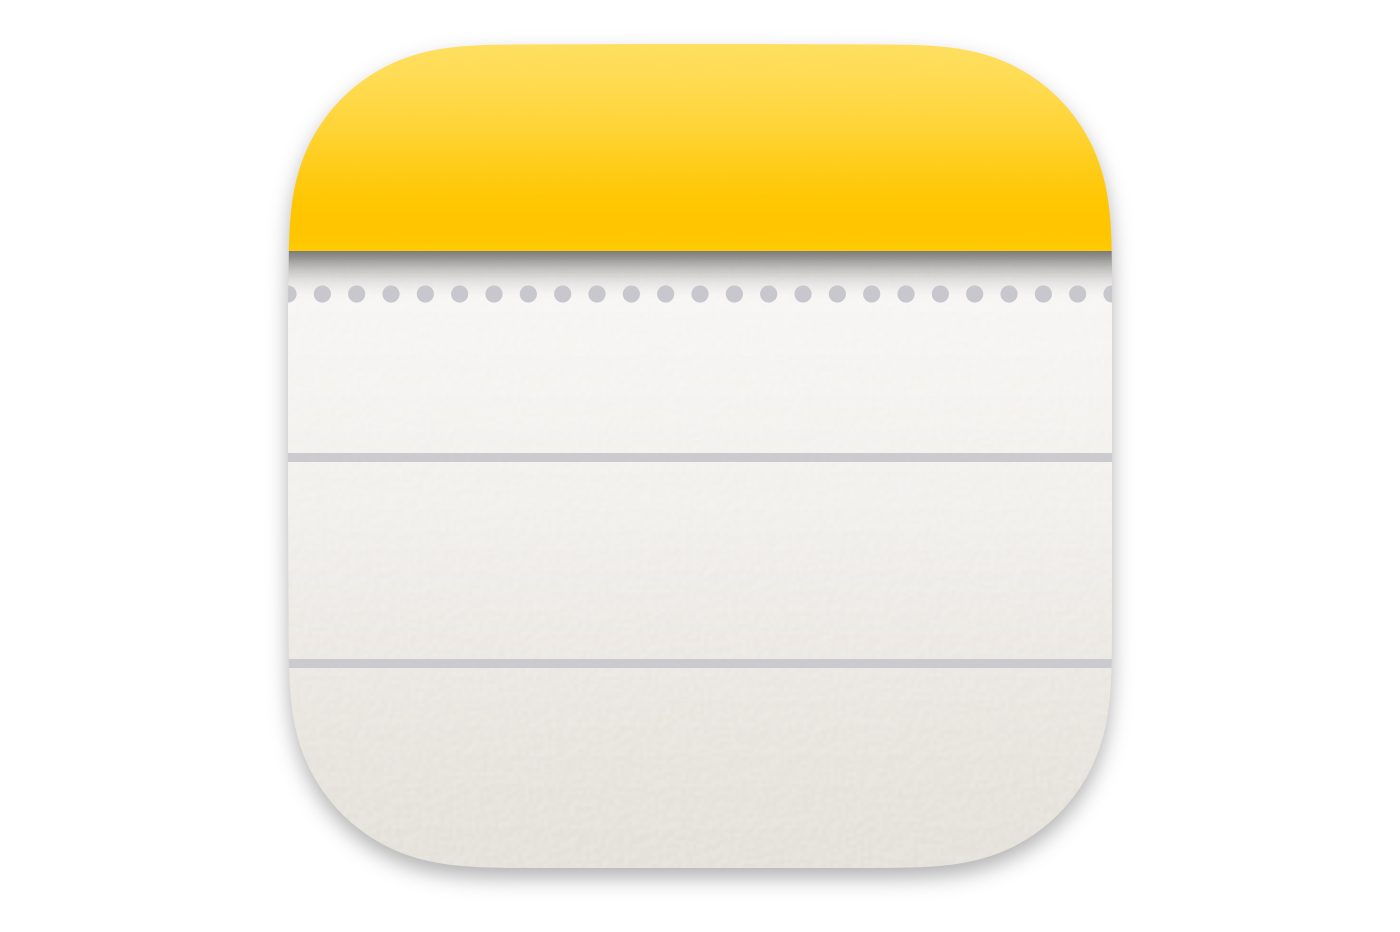 iOS Notes